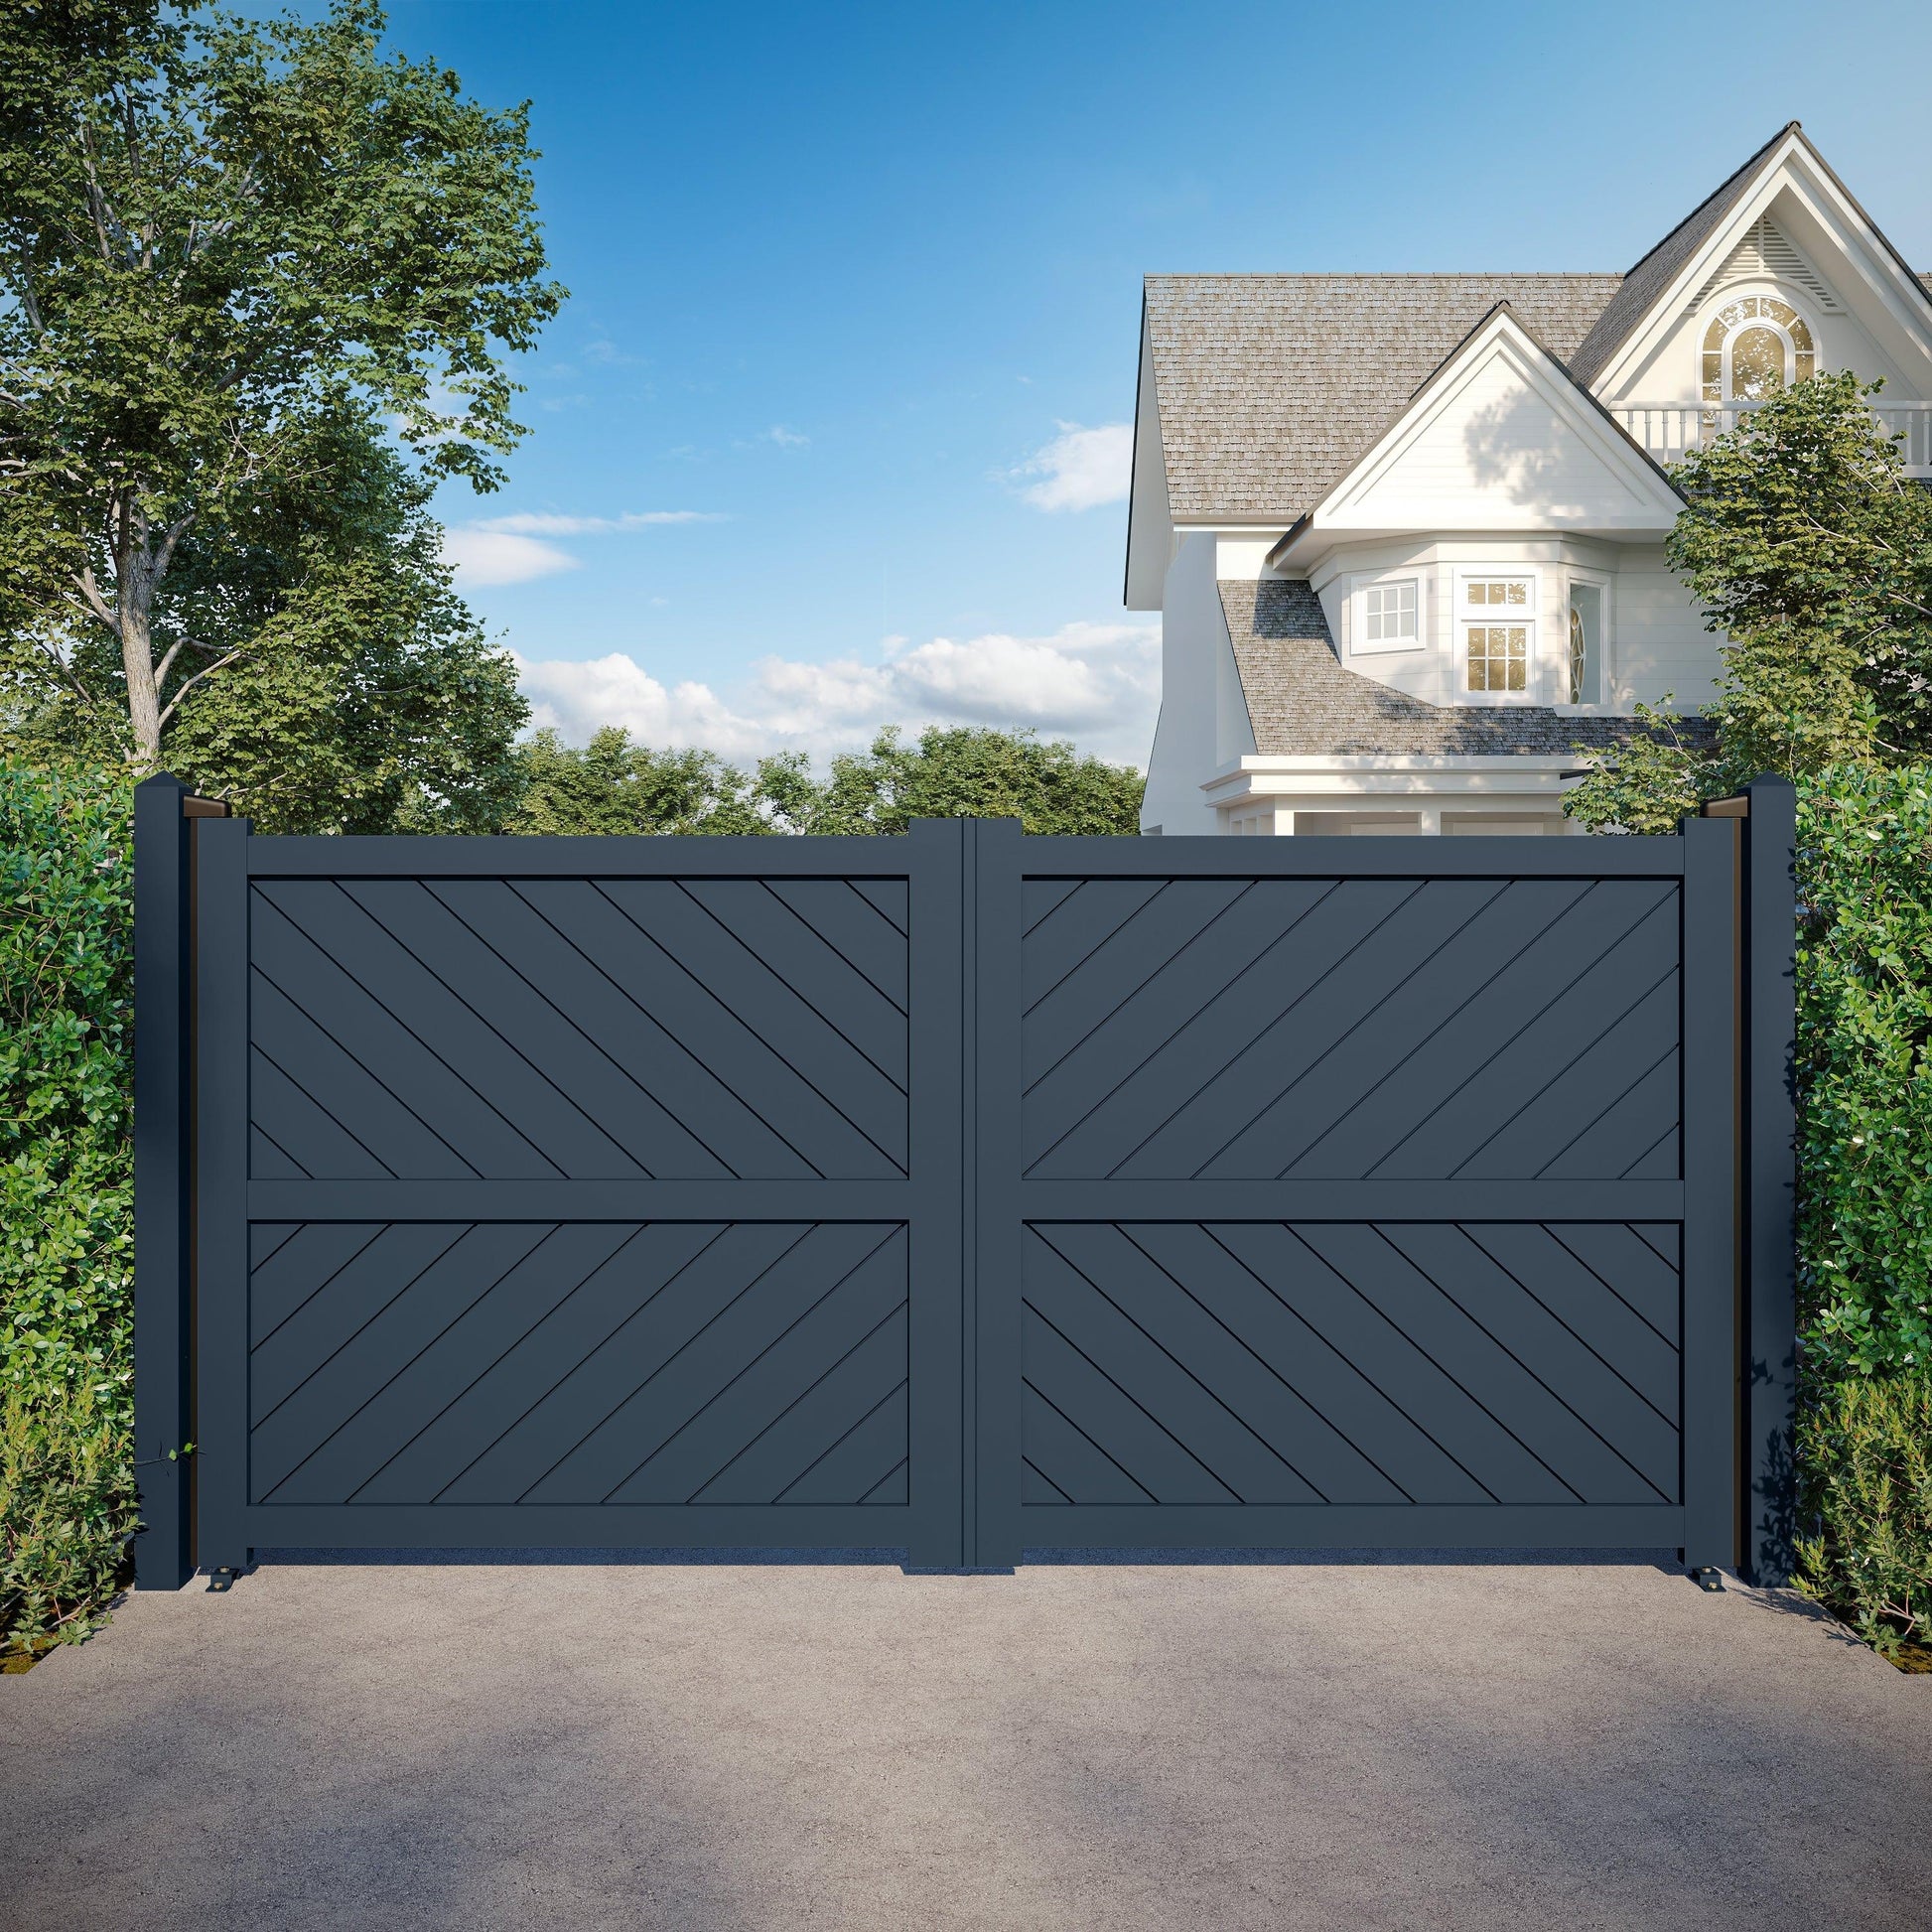 DiagonalElegance | Aluminium Full Privacy Diagonal Slat Driveway Gate - Residential Gates